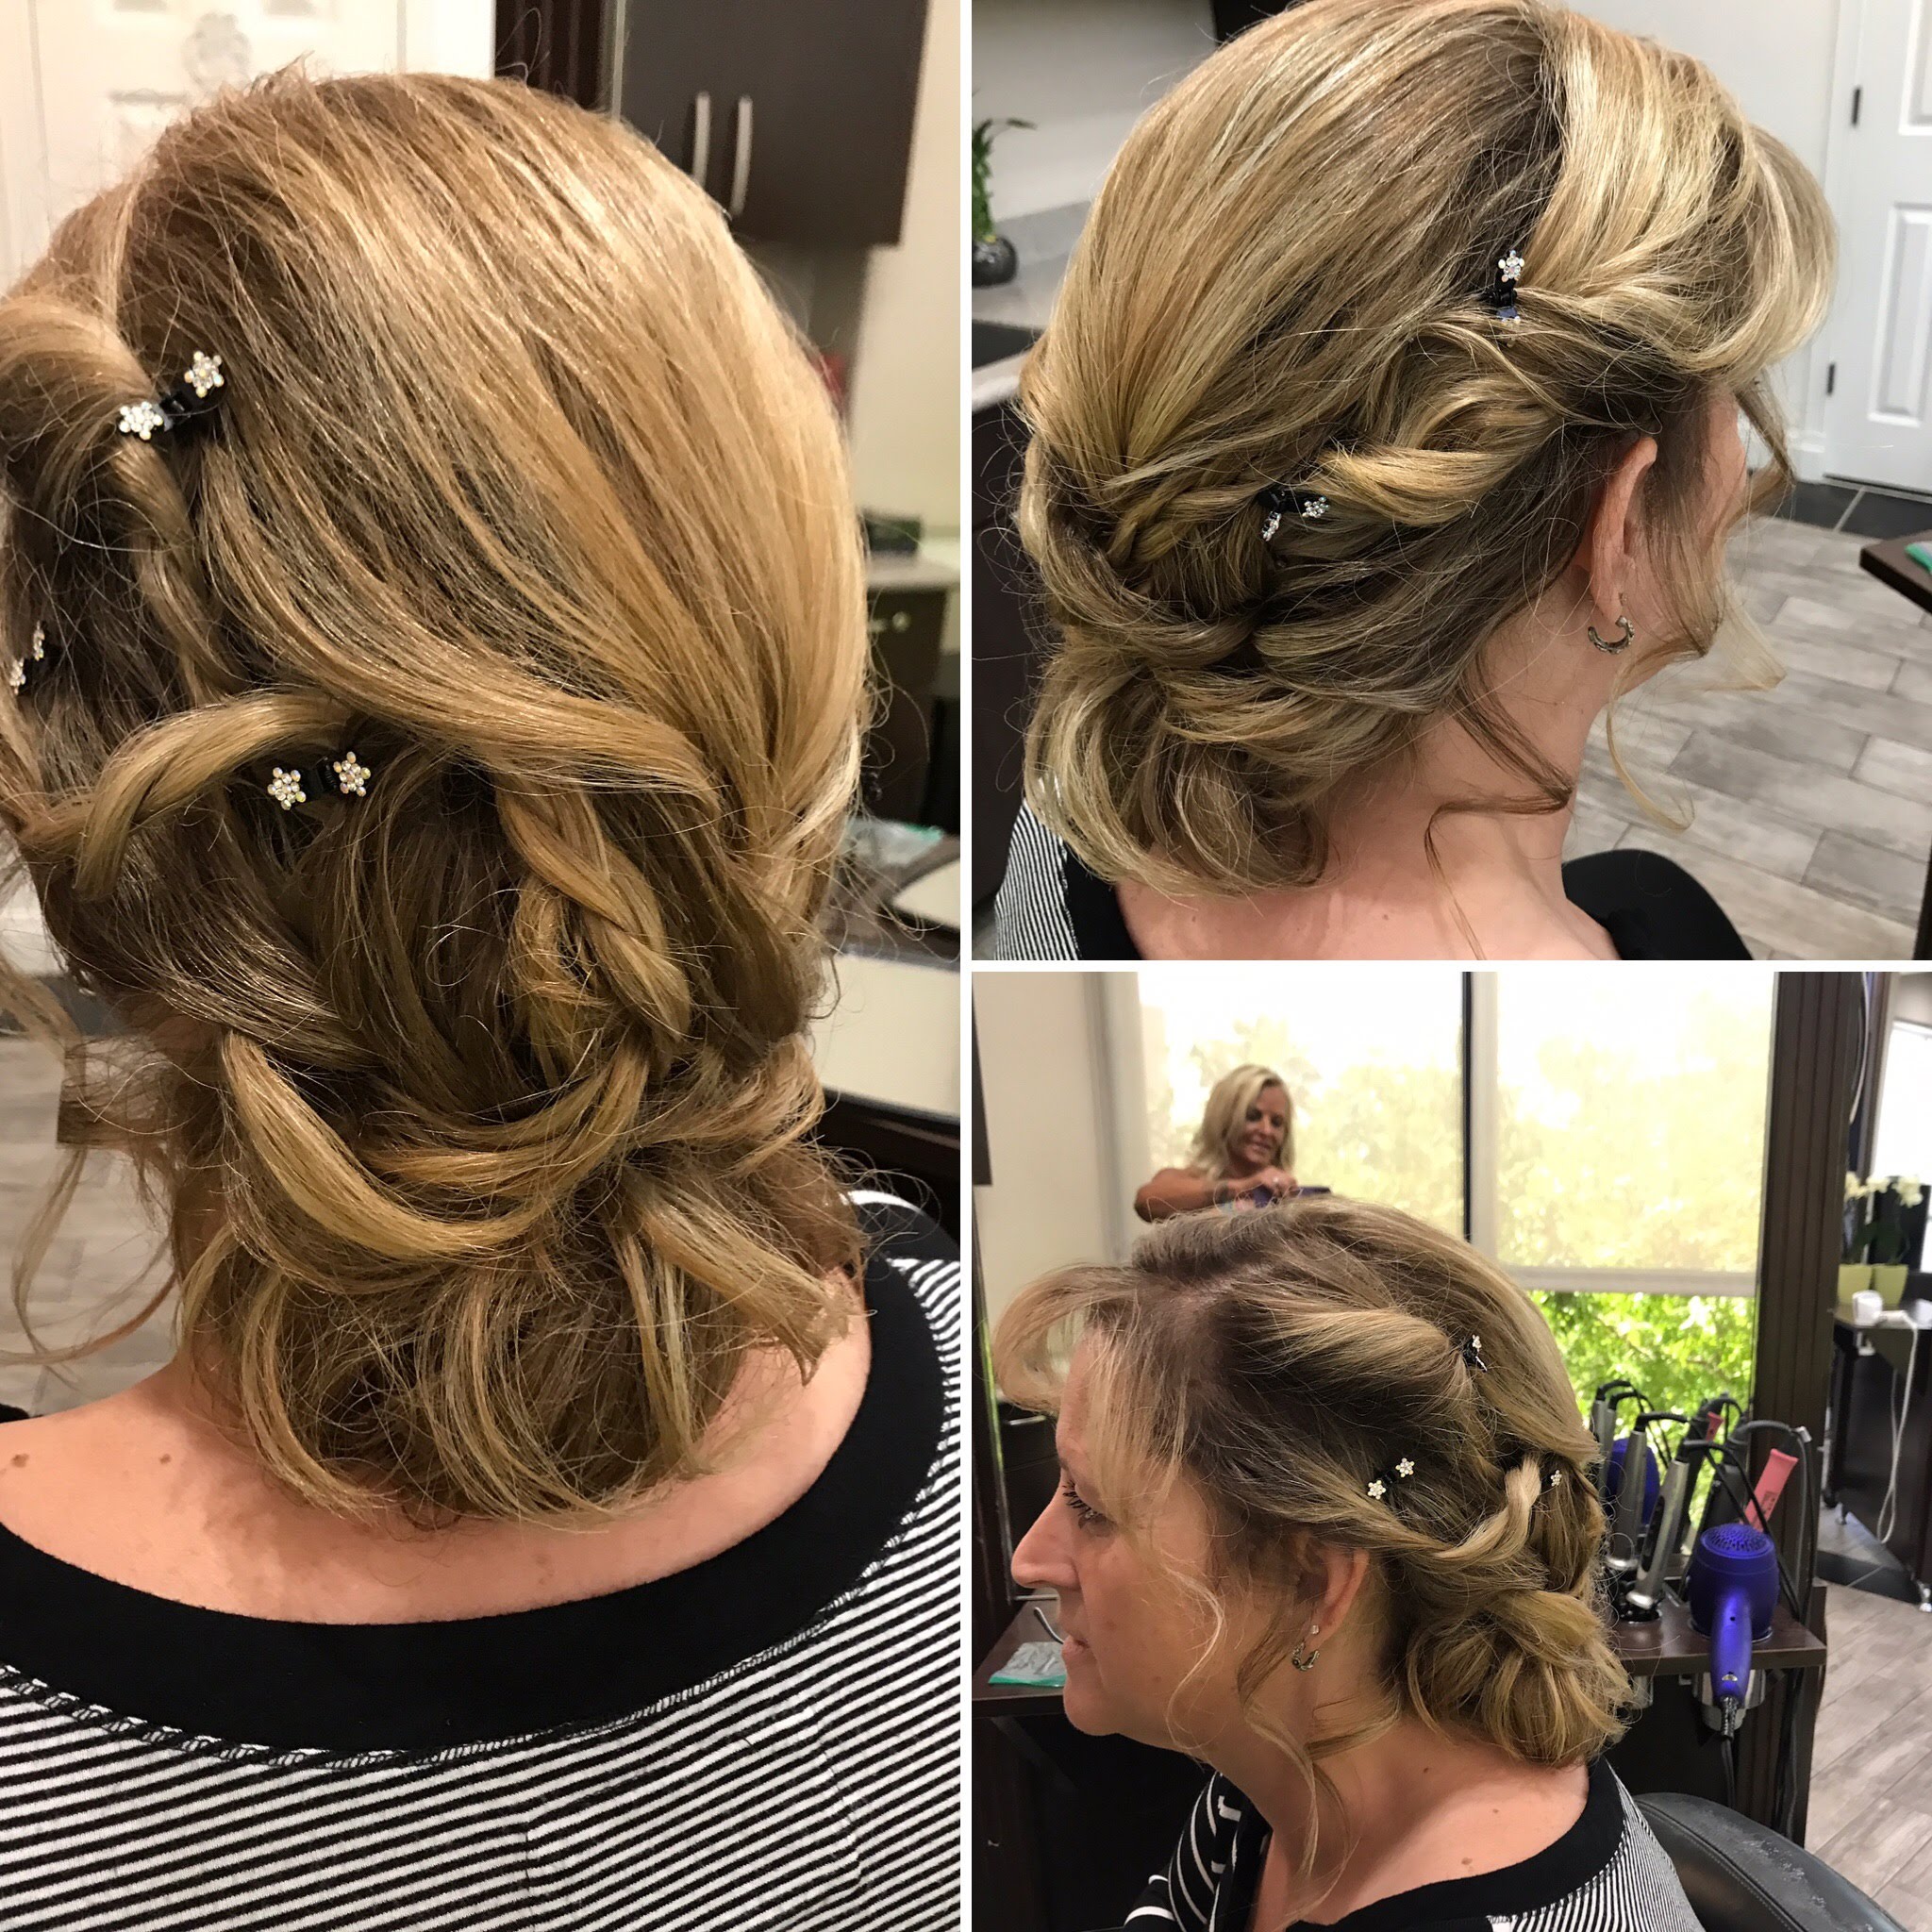 3 image shots of bridal party hair style at The Salon at Lakeside